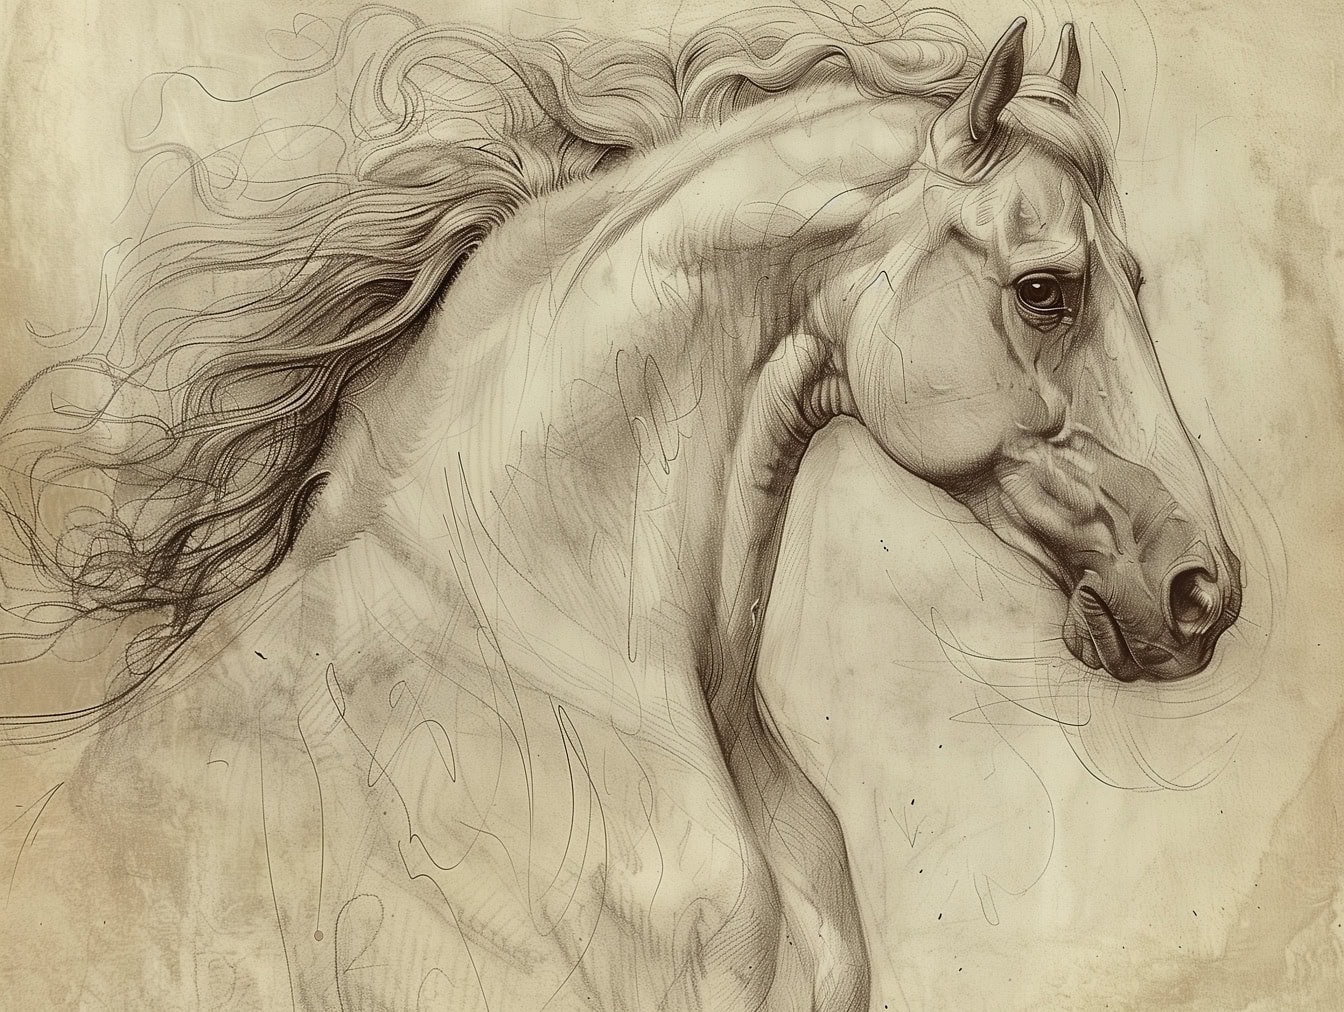 Dessin d’une tête de cheval : un croquis de tête d’étalon ressemble à l’art d’artistes célèbres